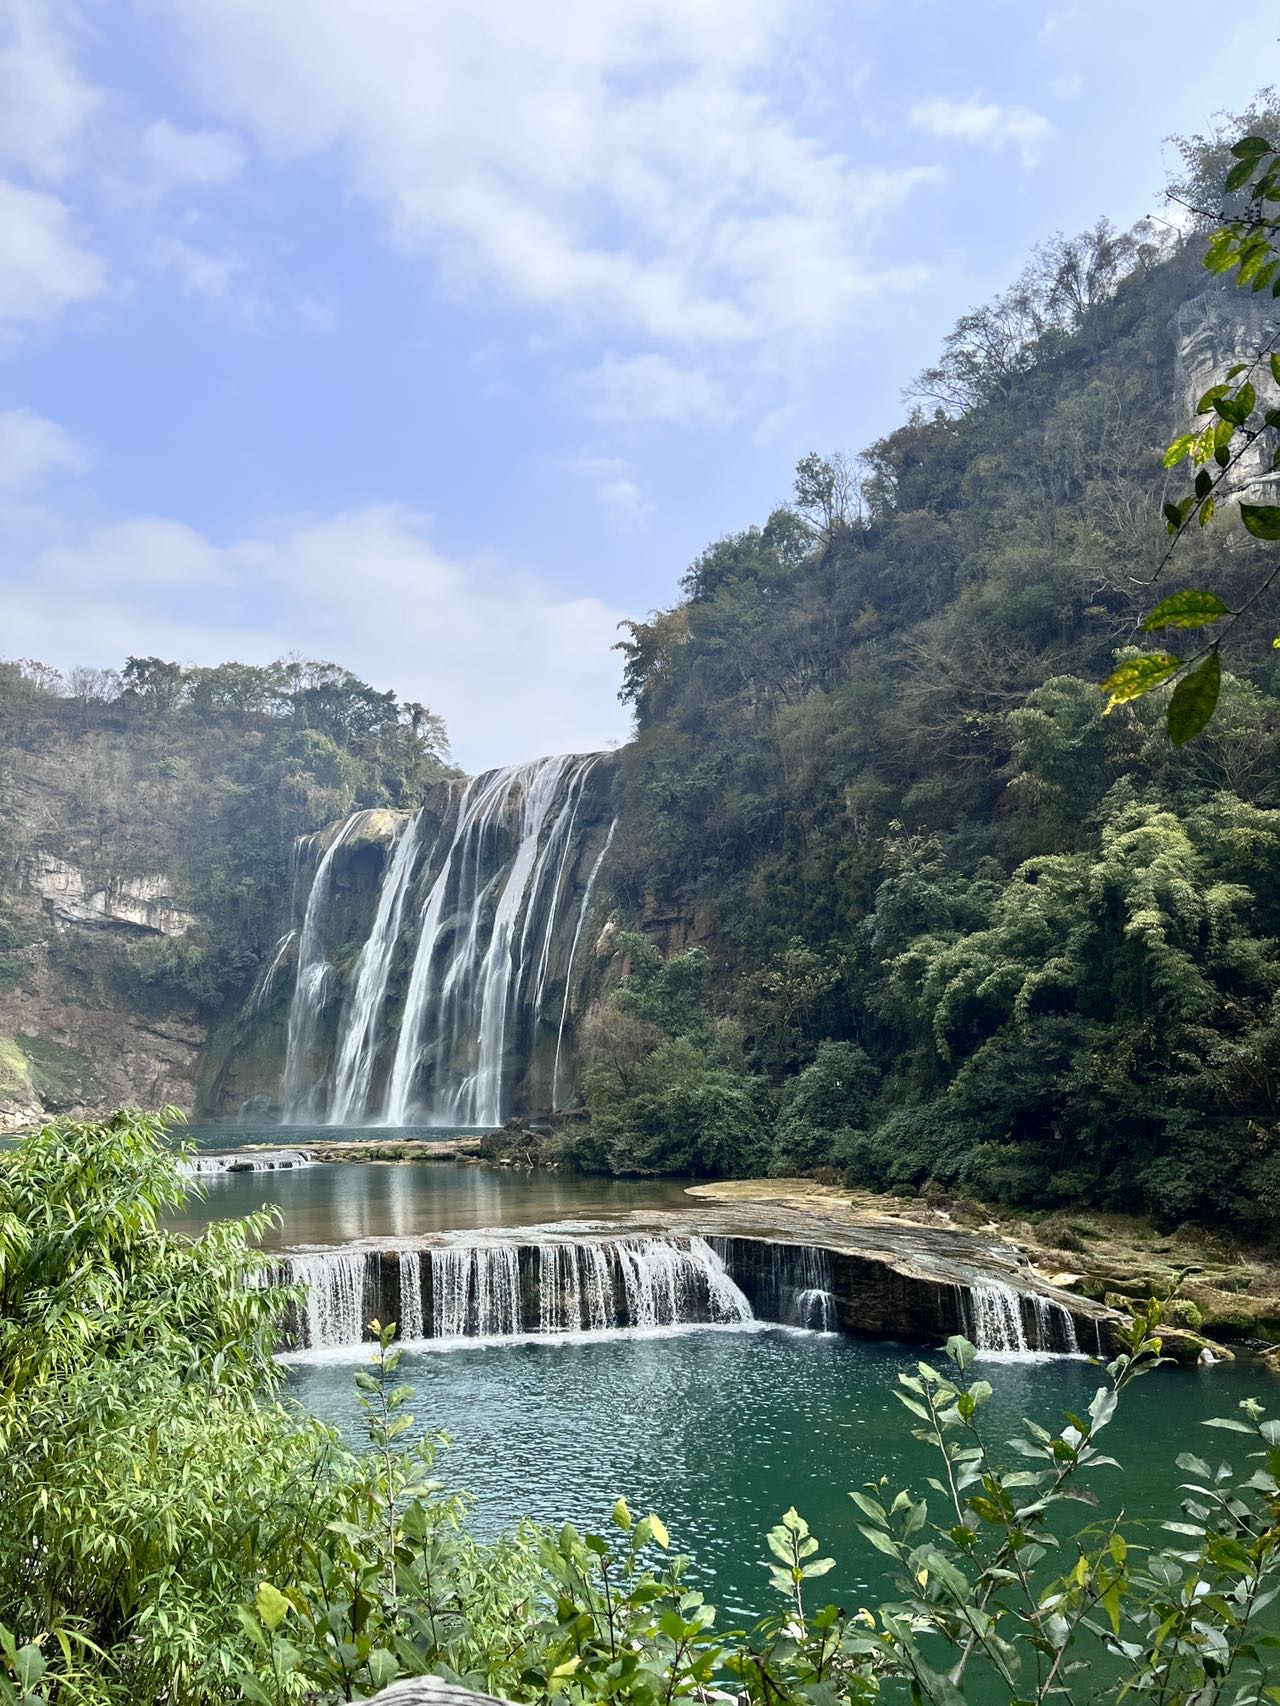 古称白水河瀑布，亦名“黄葛墅”瀑布或“黄葛树”瀑布，贵州民间自古以来就流传有黄果树瀑布的神话故事，黄